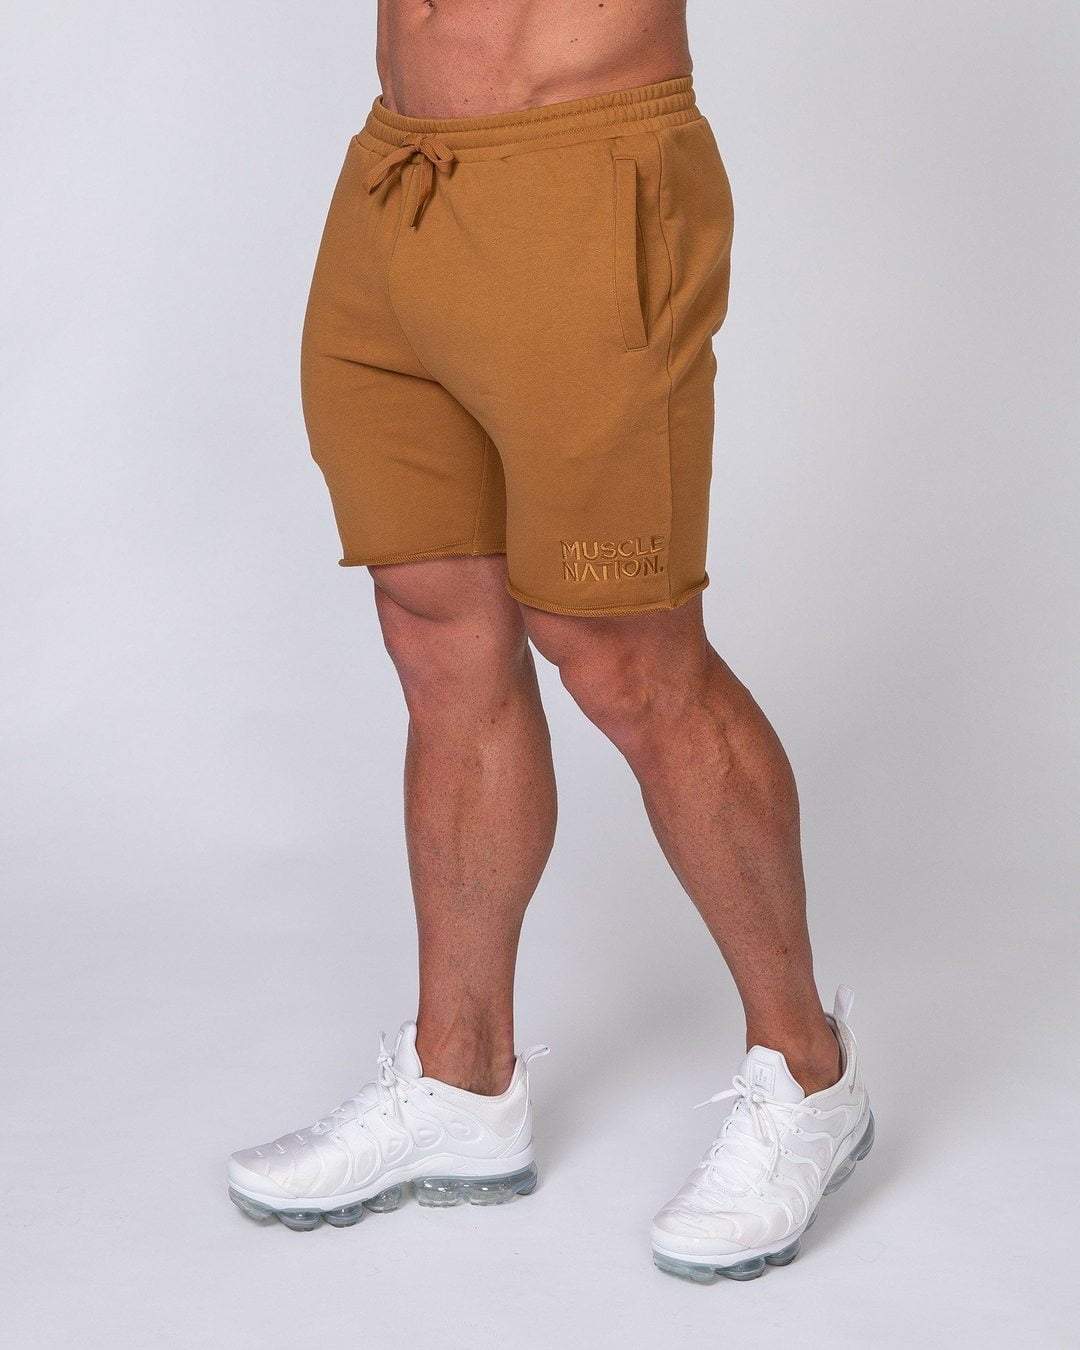 musclenation Mens Vintage Shorts - Latte